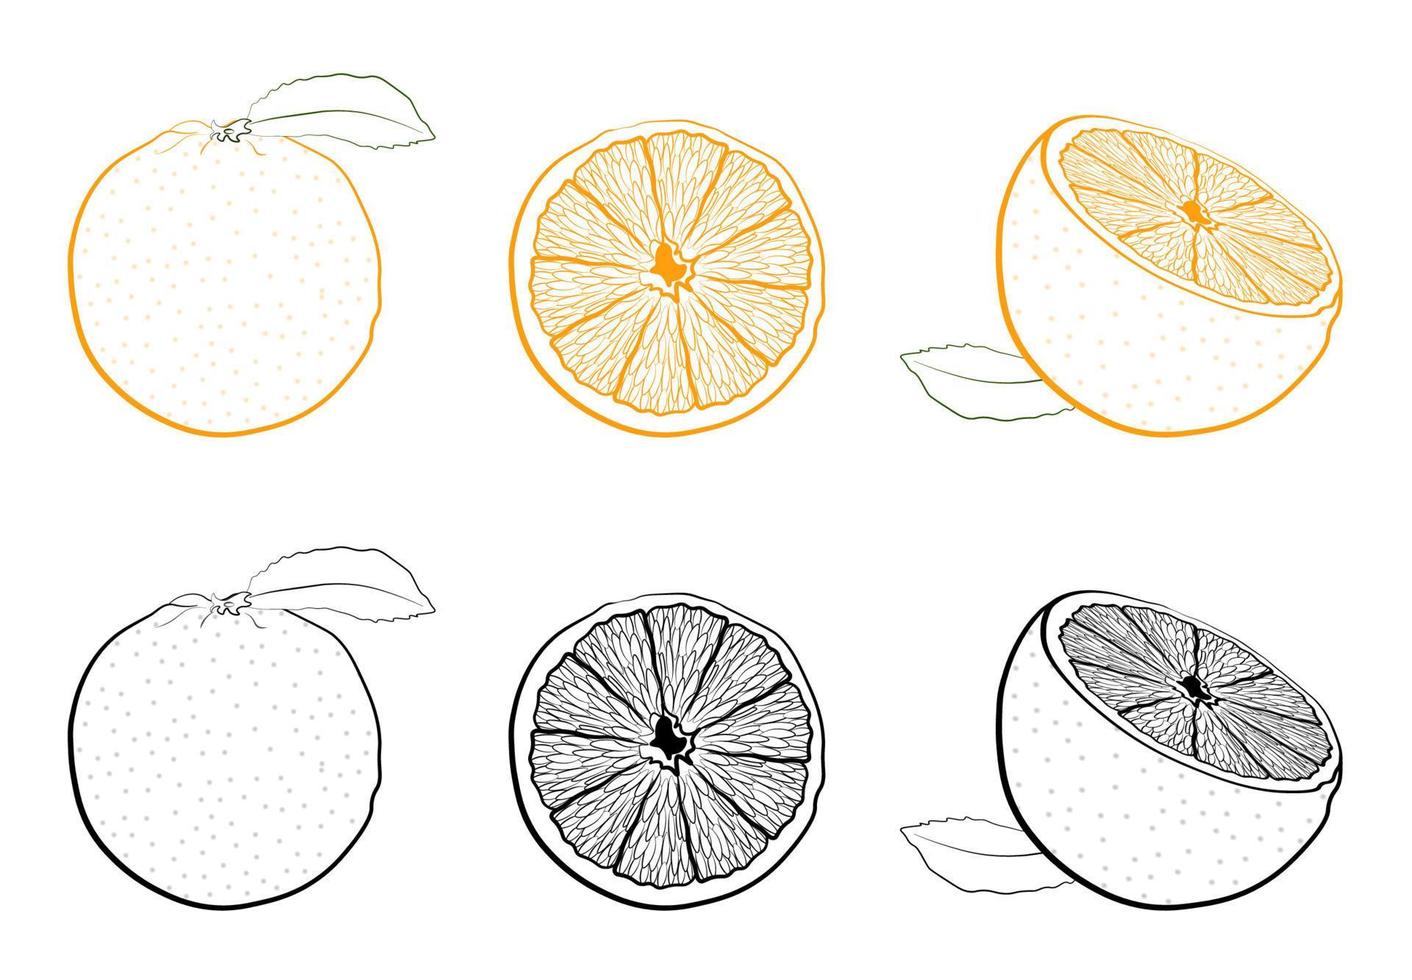 suculenta laranja fresca inteira e fracionada. conjunto de imagens em preto e branco e coloridas de frutas tropicais. vetor isolado no fundo branco